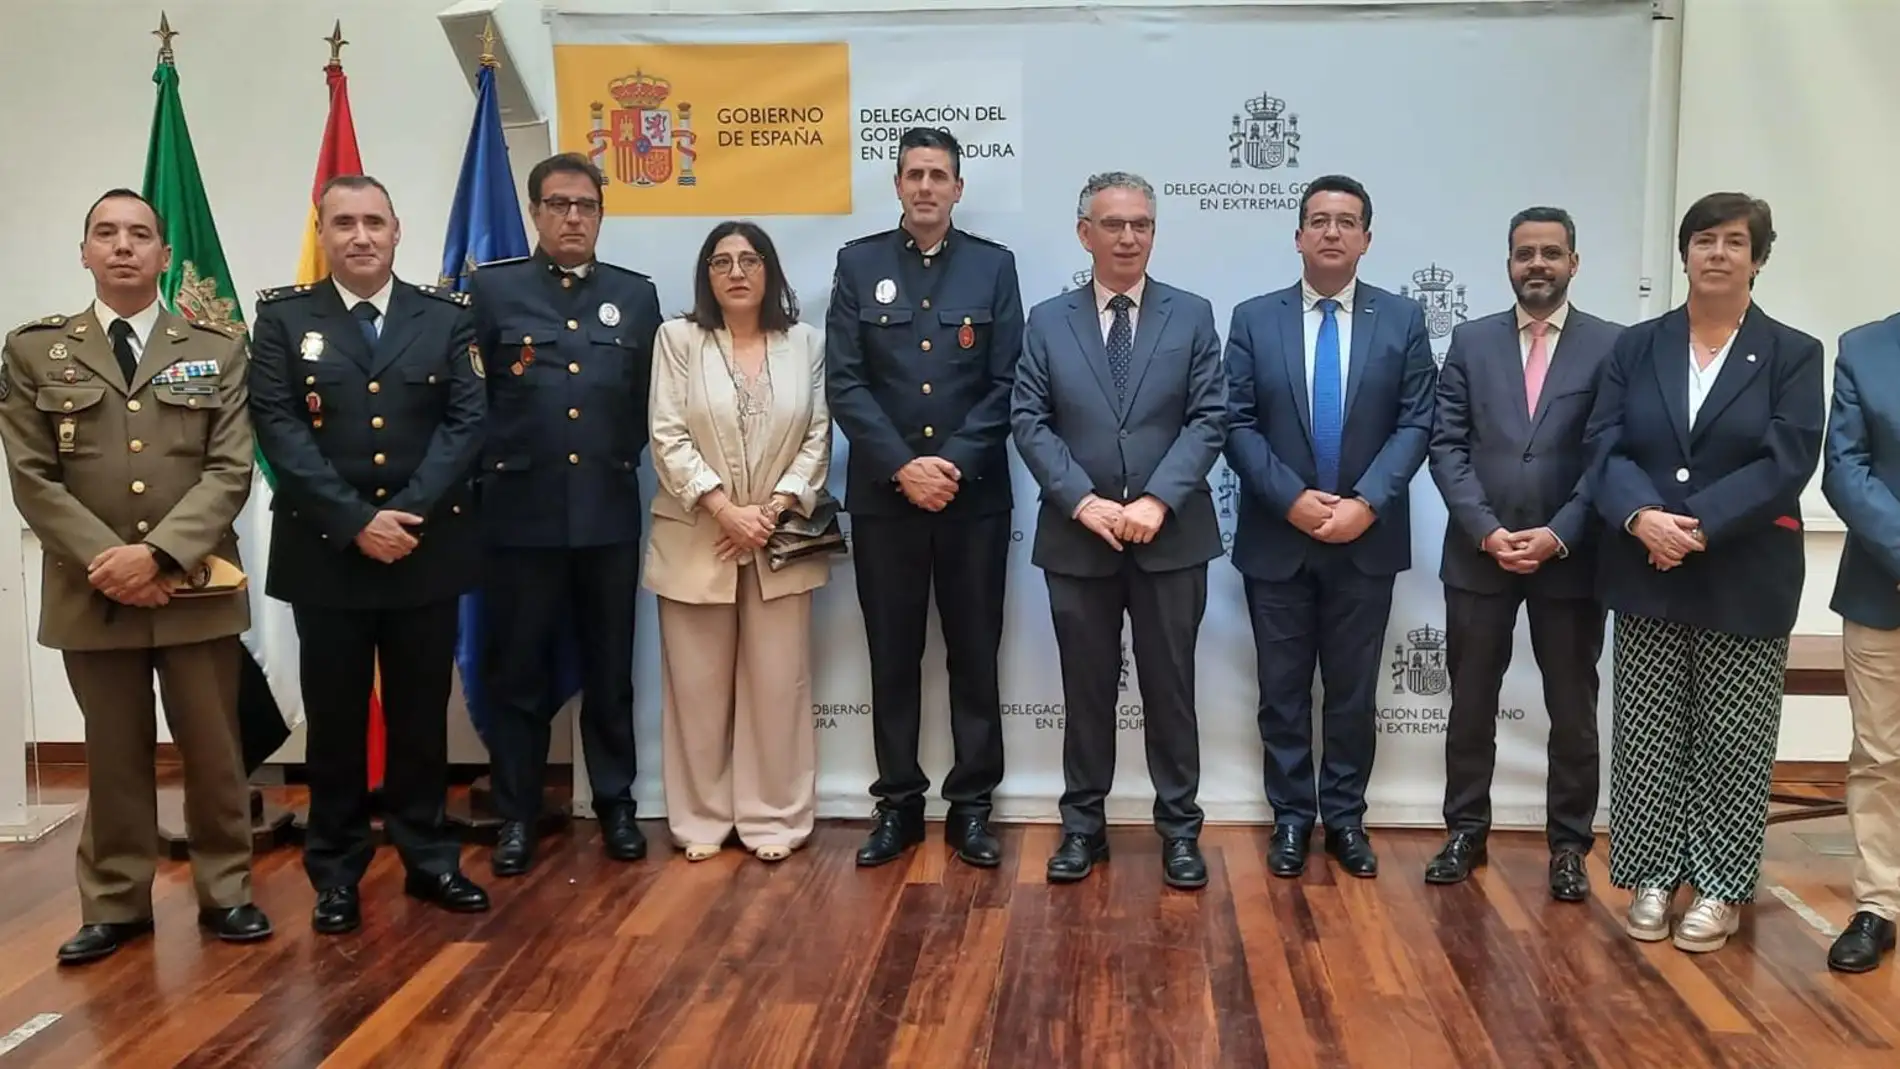 Policías locales, nacionales y el Batallón de emergencia de la UME reconocidos con las medallas al mérito de Protección Civil